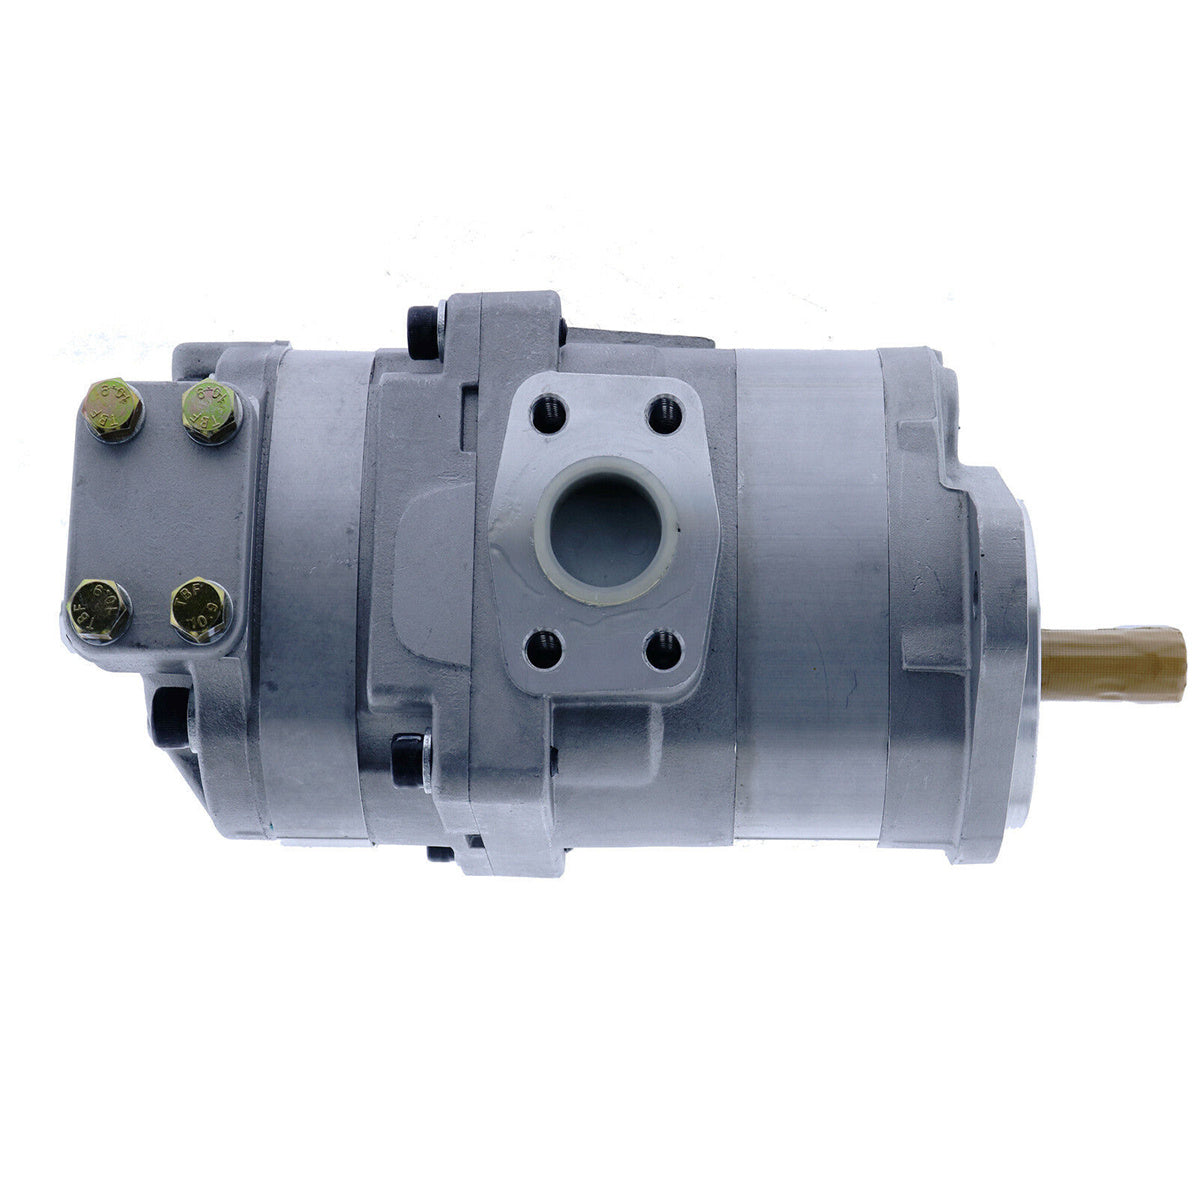 705-51-20070 Hydraulic Pump for Komatsu 518 532 WA180-1 WA180-1LC WA300-1 - Sinocmp